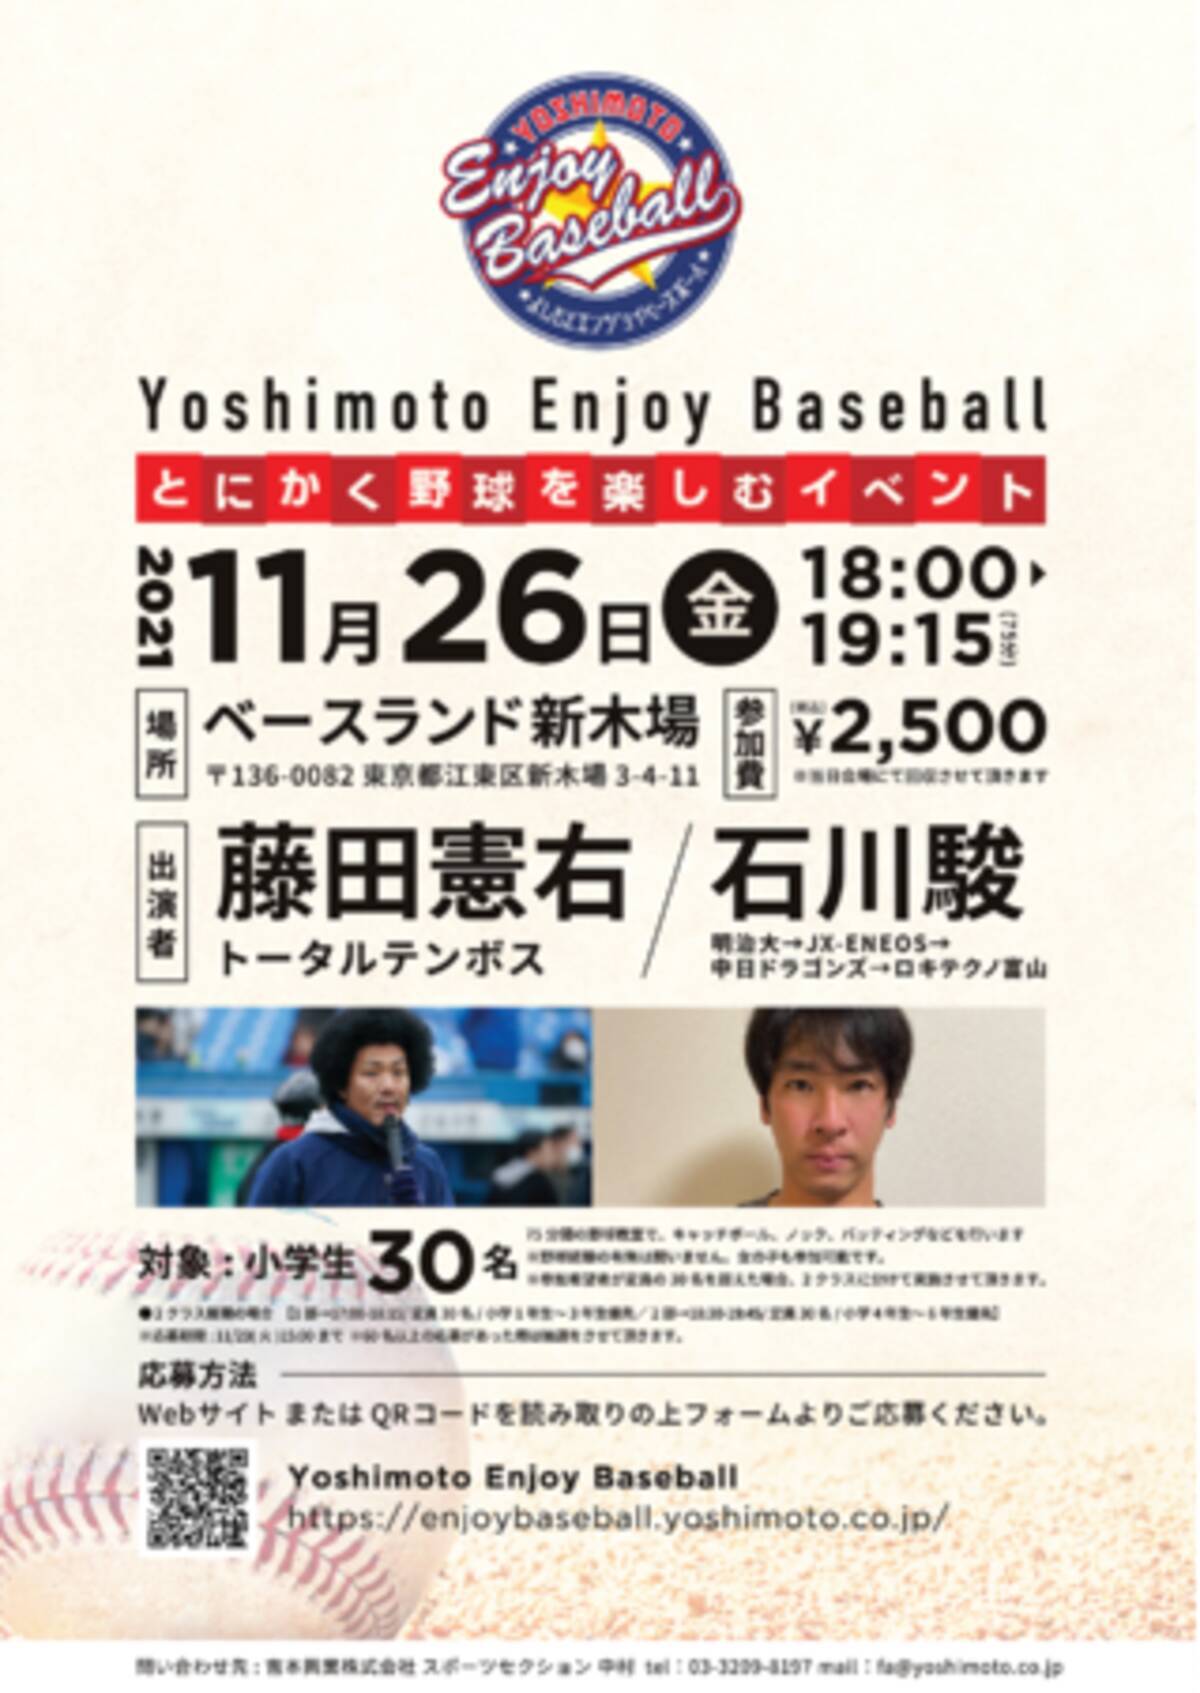 野球が好きなこども達 野球が楽しくなくなったこども達あつまれ Yoshimoto Enjoy Baseball とにかく野球を楽しむイベント 21年11月9日 エキサイトニュース